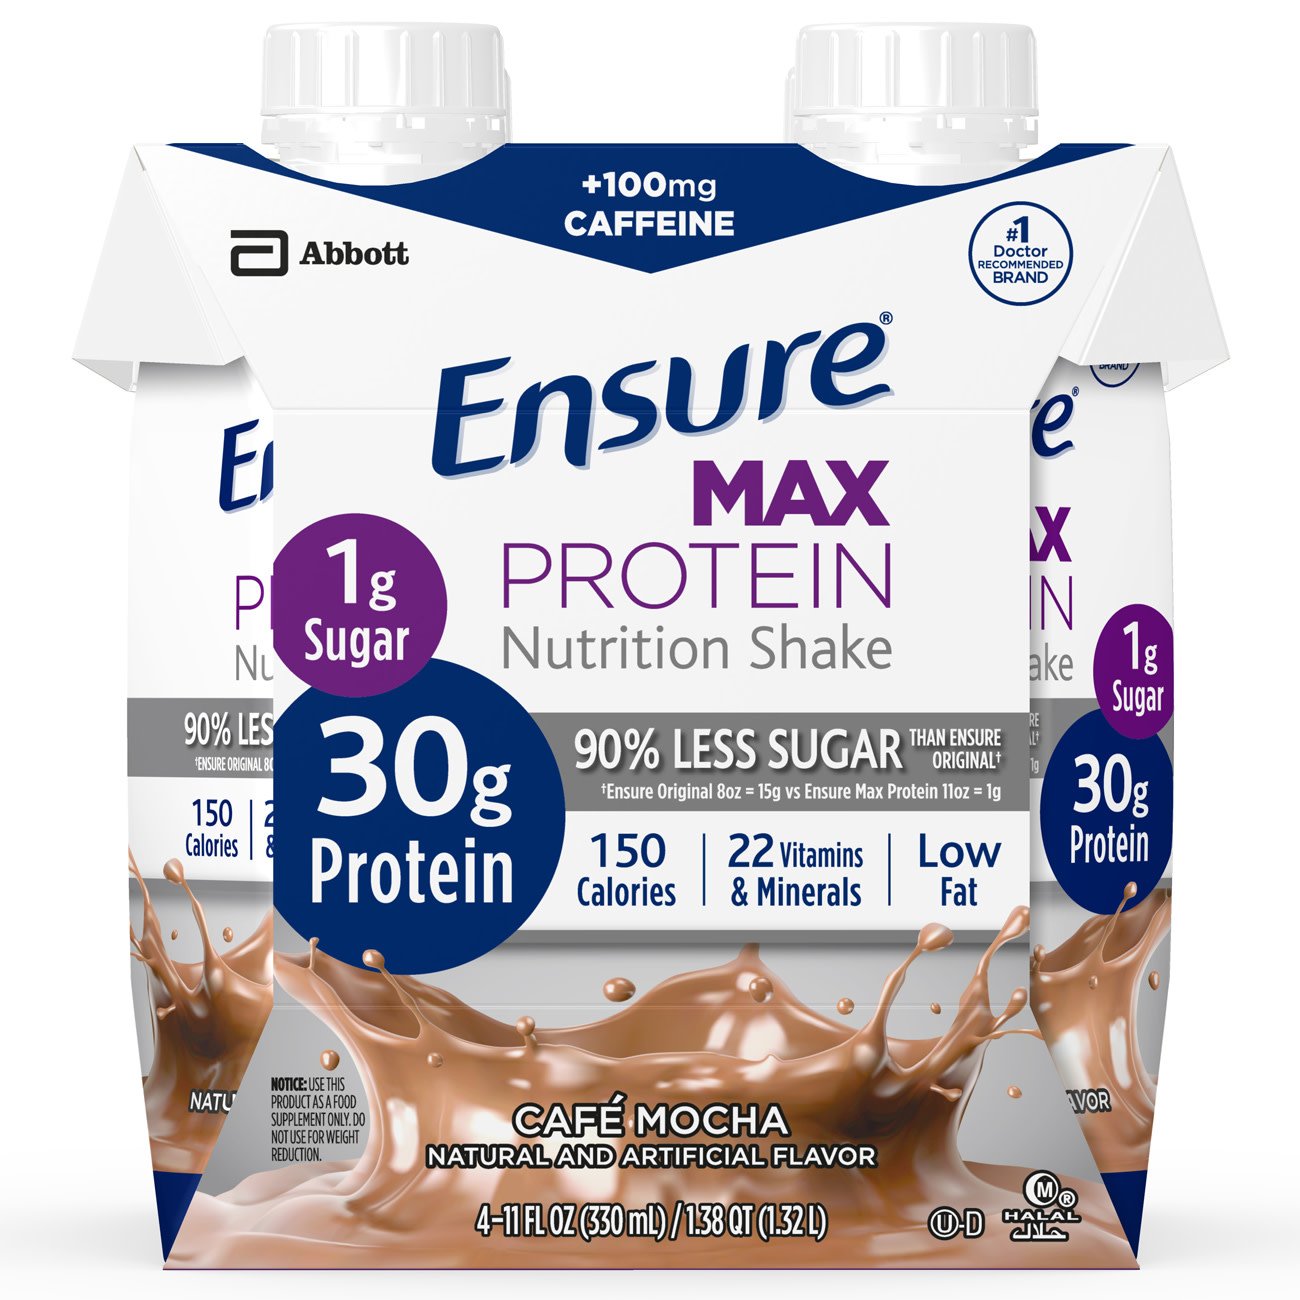 Ensure® Max Café Mocha Protein Nutrition Shake, 11-ounce carton (12 Units)